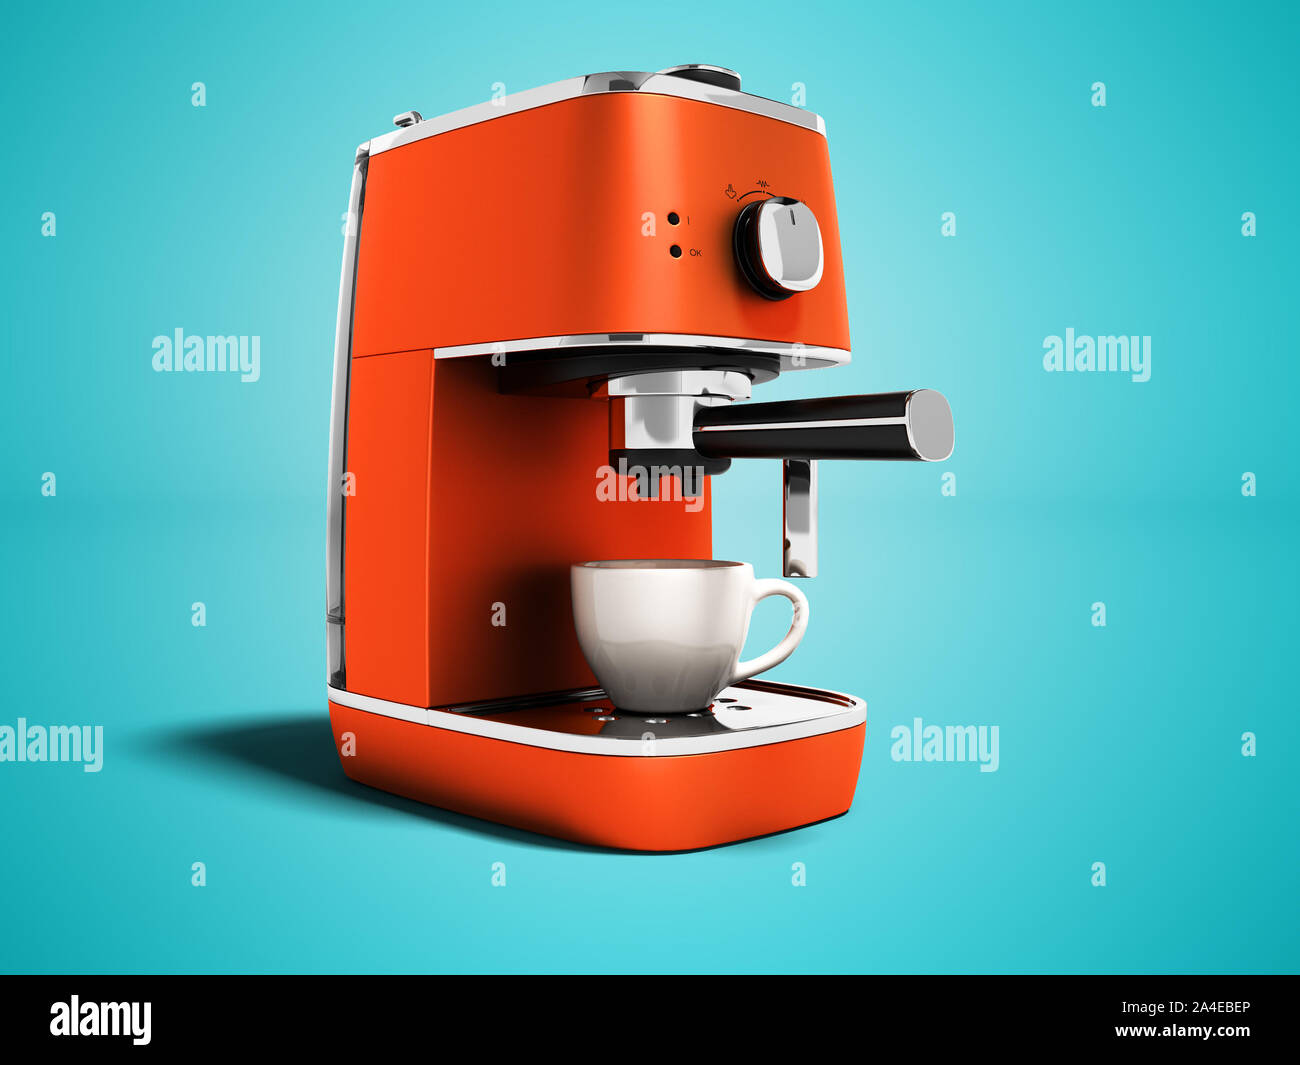 Espresso Maker On Orange Background Stockfotos und -bilder Kaufen - Alamy